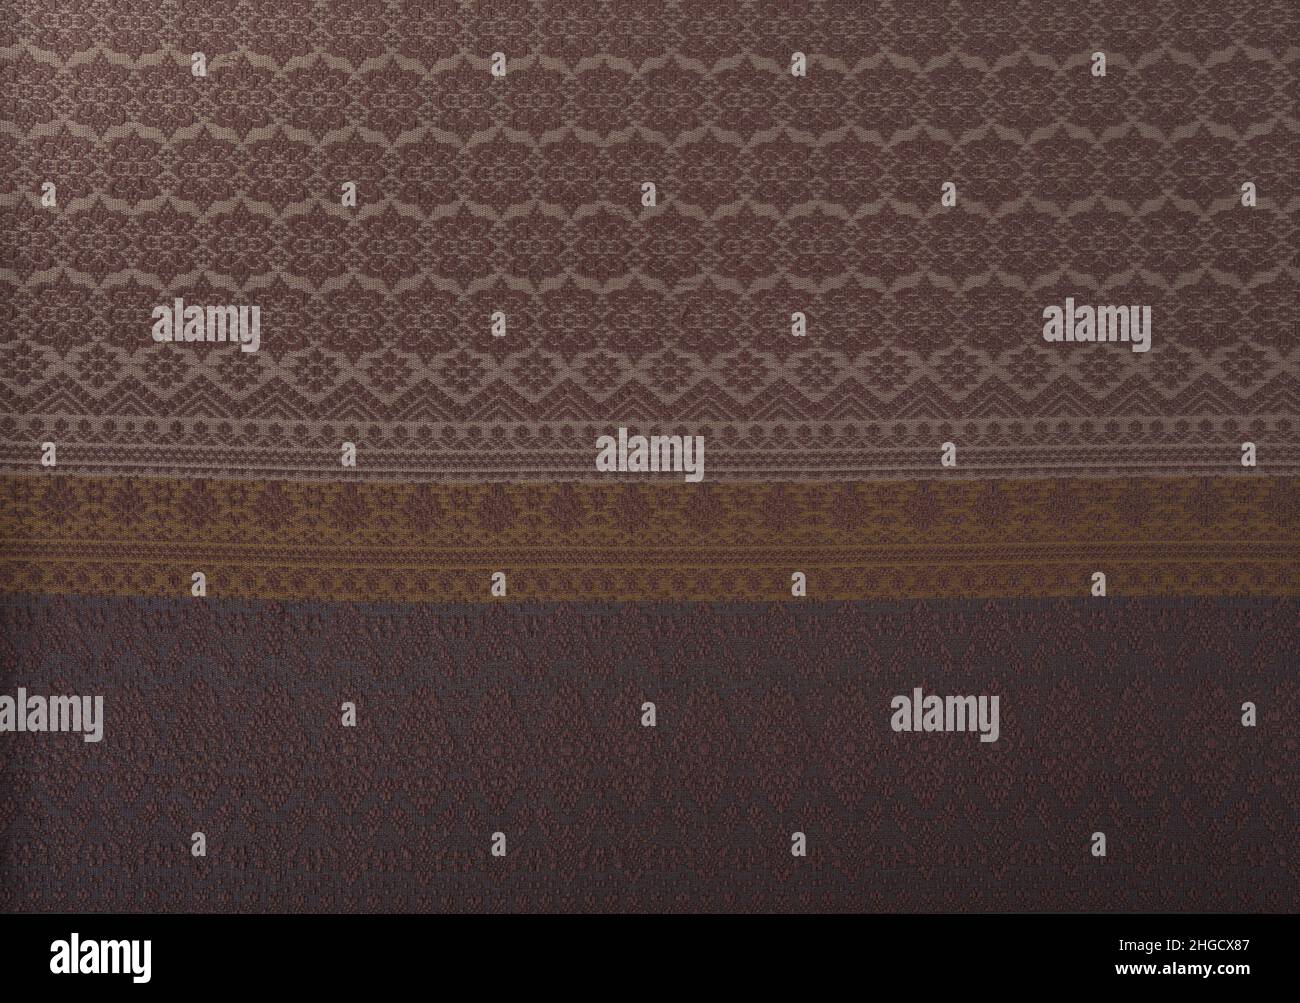 Primer plano de la textura del tejido de punto de algodón tailandés sin costuras. Vista superior del fondo. Foto de stock